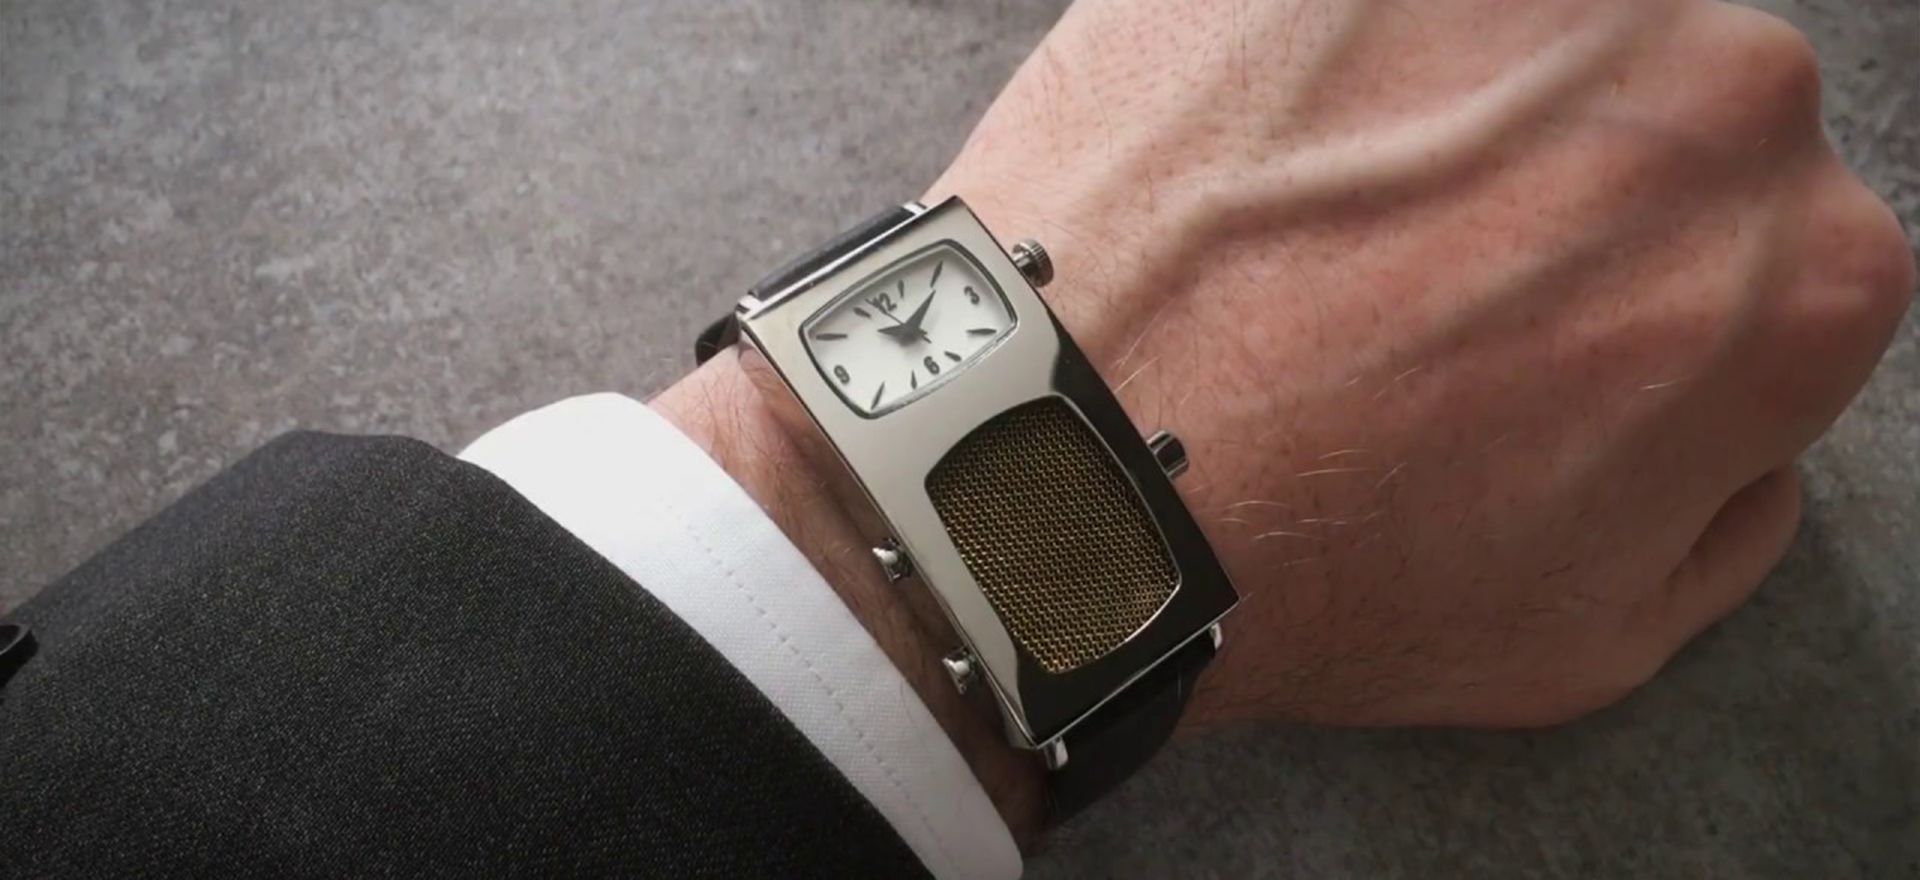 دستگاهی تخیلی شبیه ساعت هوشمند روی دست بازیگر دیک تریسی